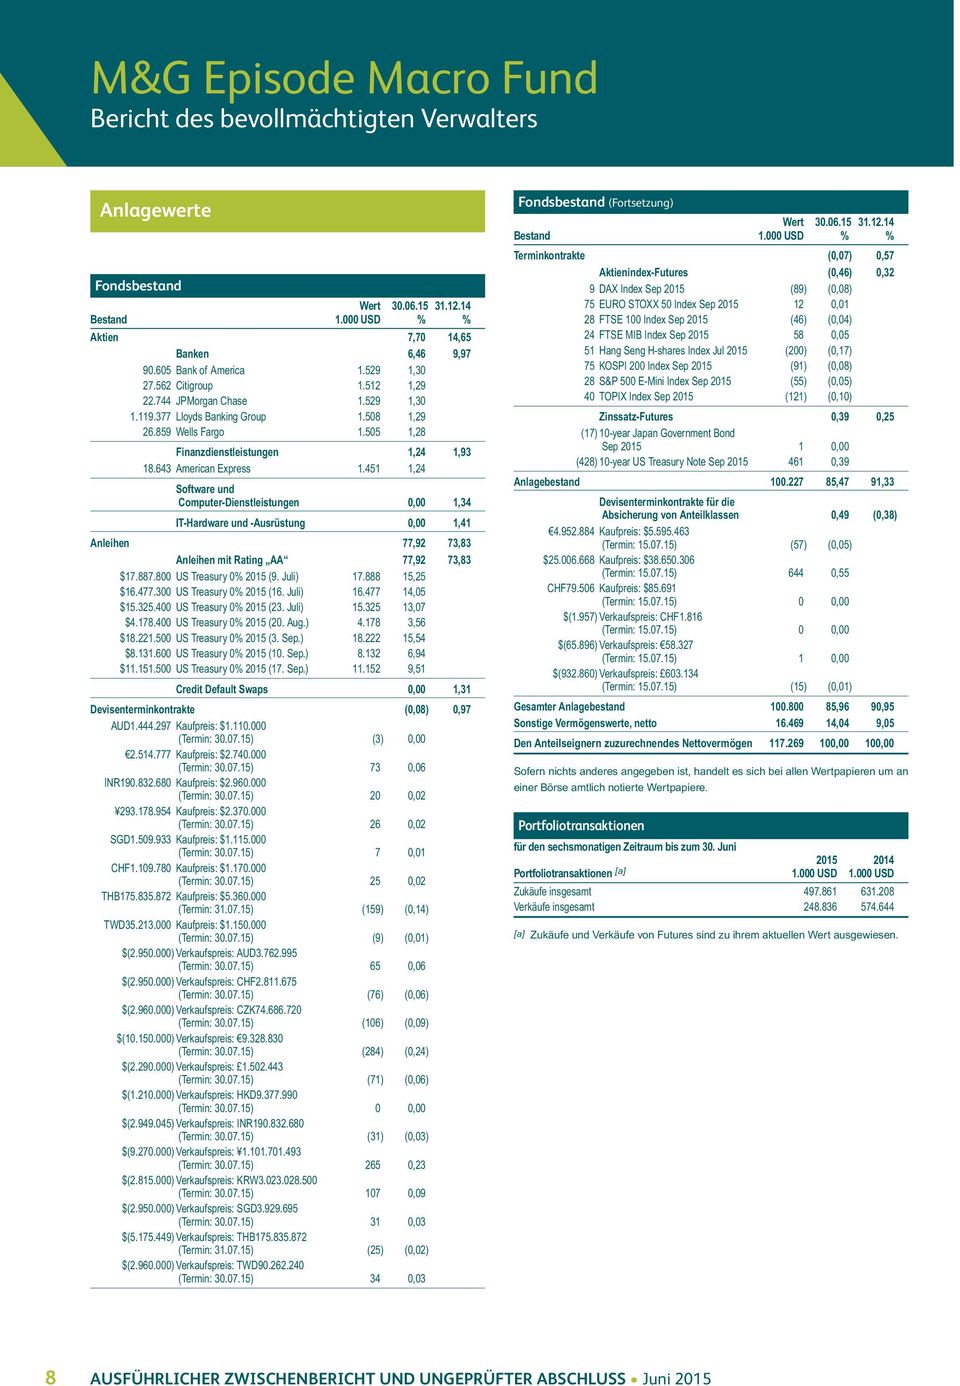 643 American Express 1.451 1,24 Software und Computer-Dienstleistungen 0,00 1,34 IT-Hardware und -Ausrüstung 0,00 1,41 Anleihen 77,92 73,83 Anleihen mit Rating AA 77,92 73,83 $17.887.